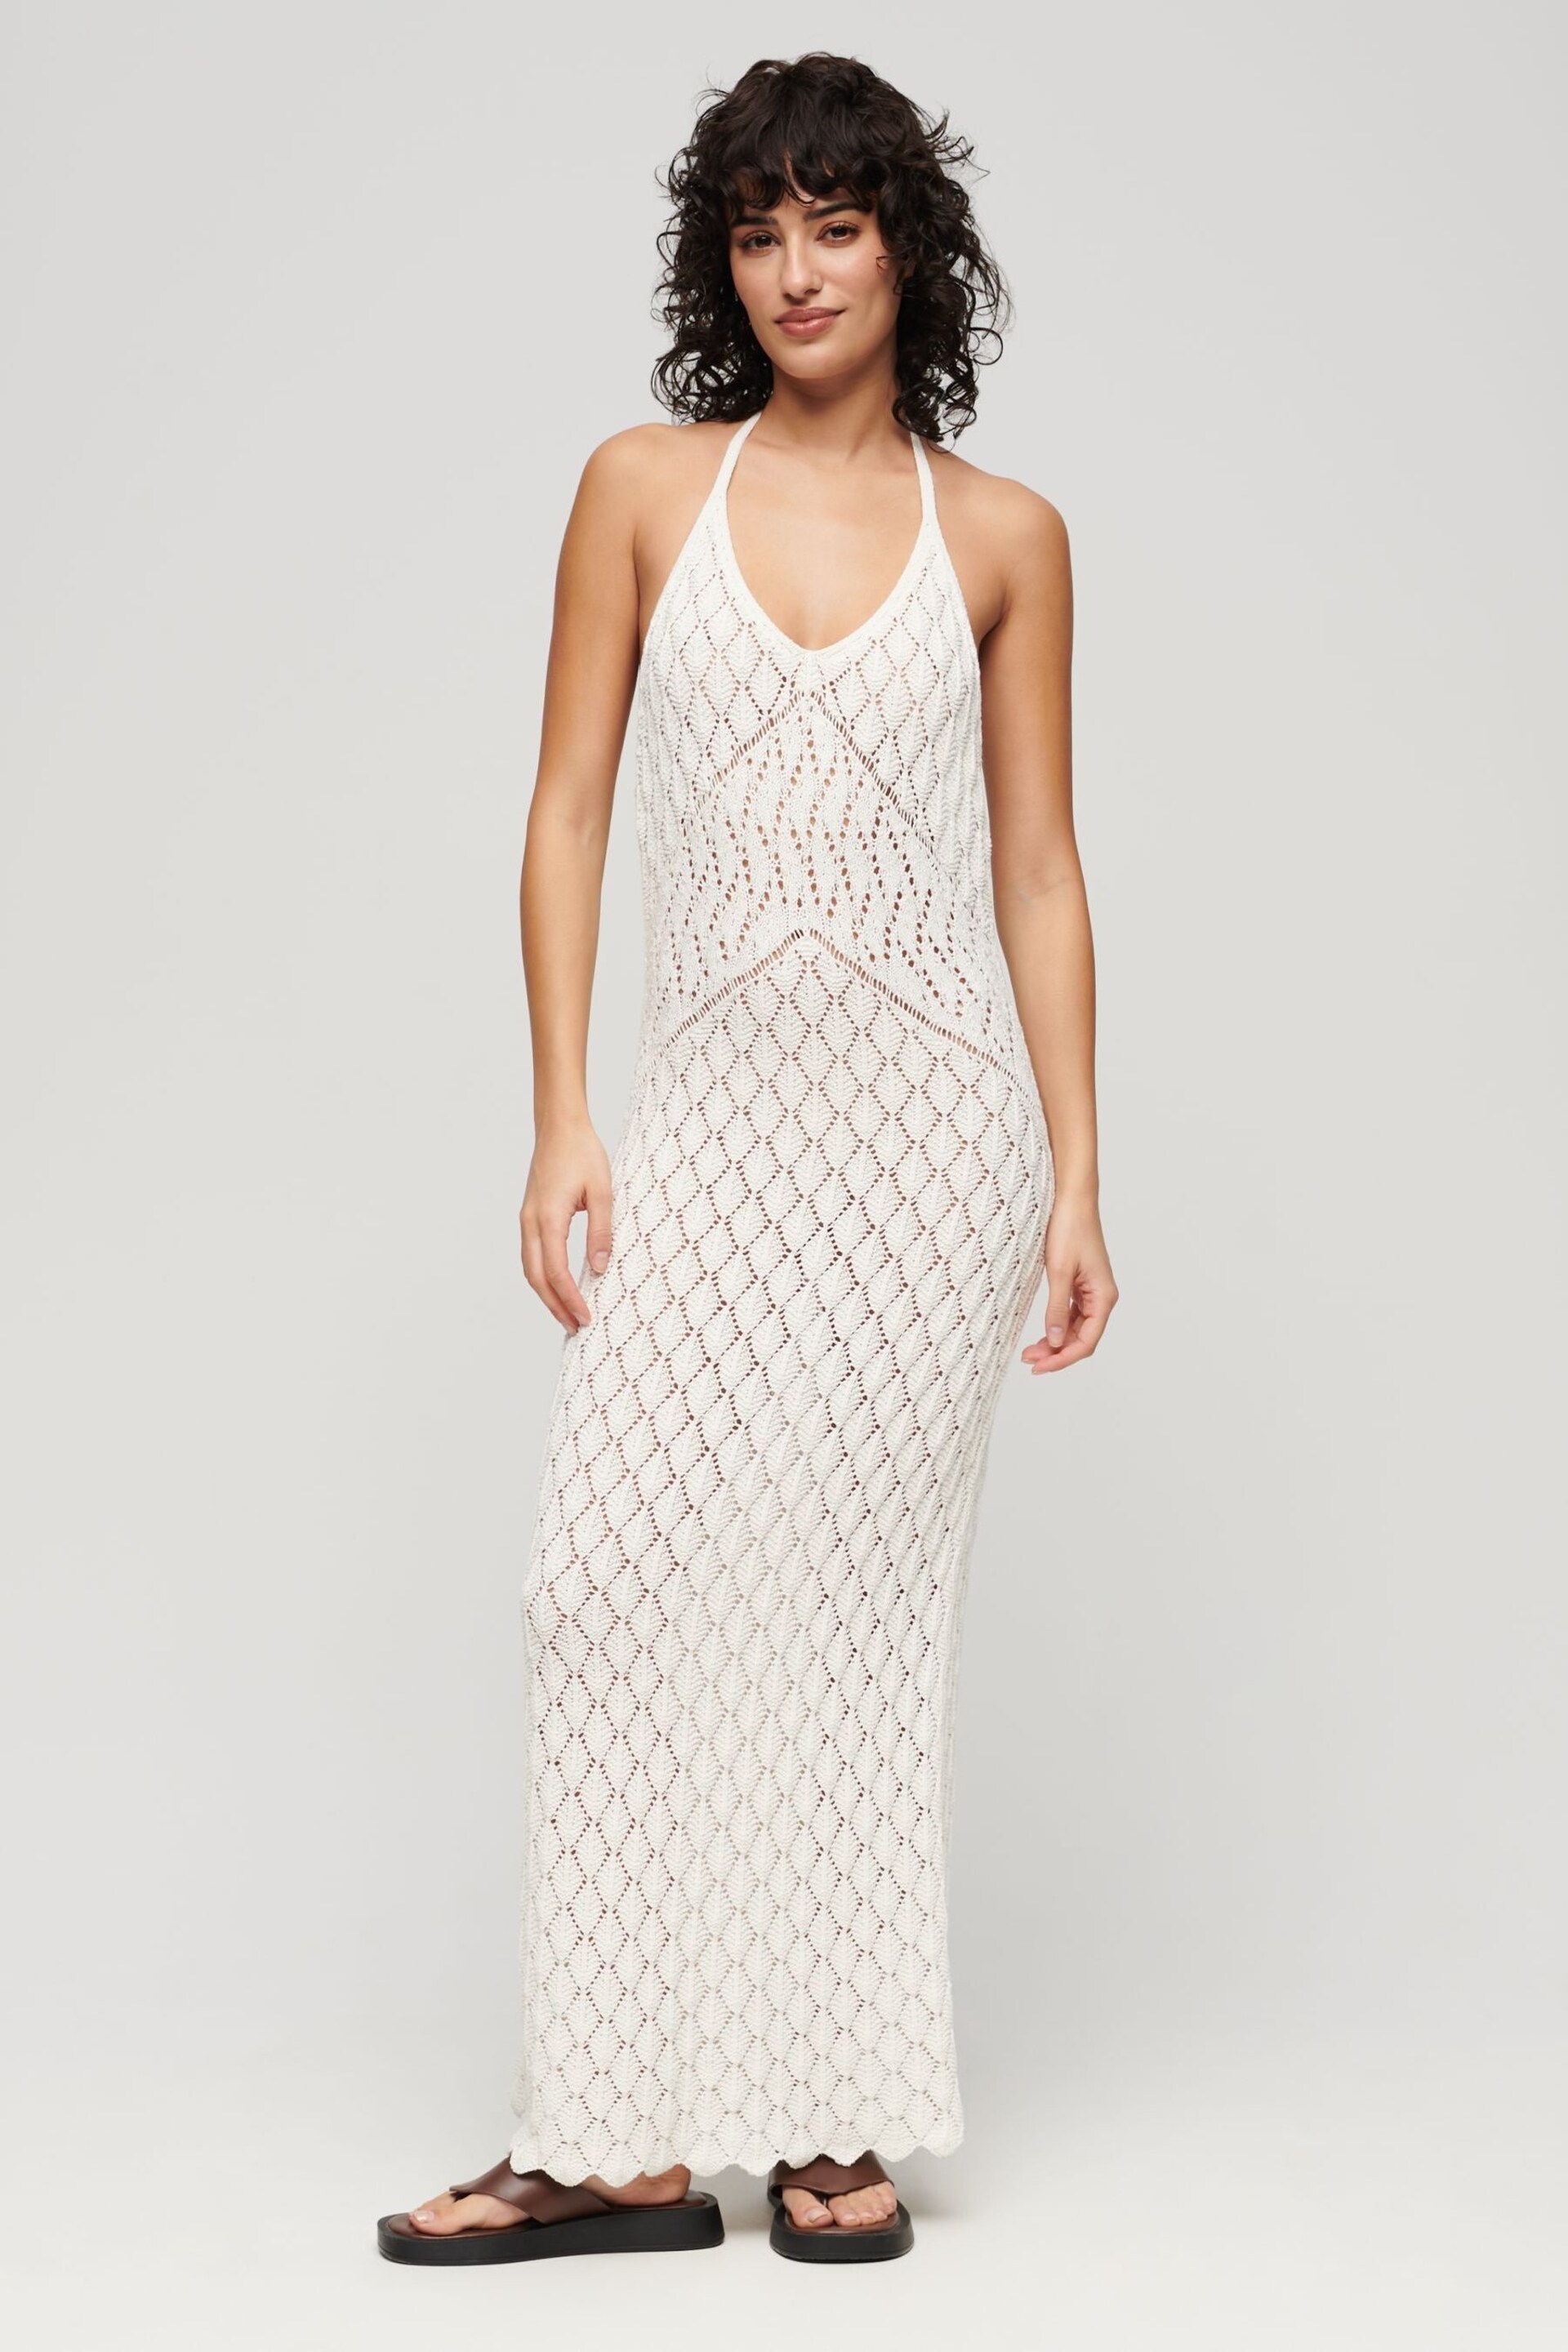 Superdry White Crochet Halter Maxi Dress - Image 1 of 3